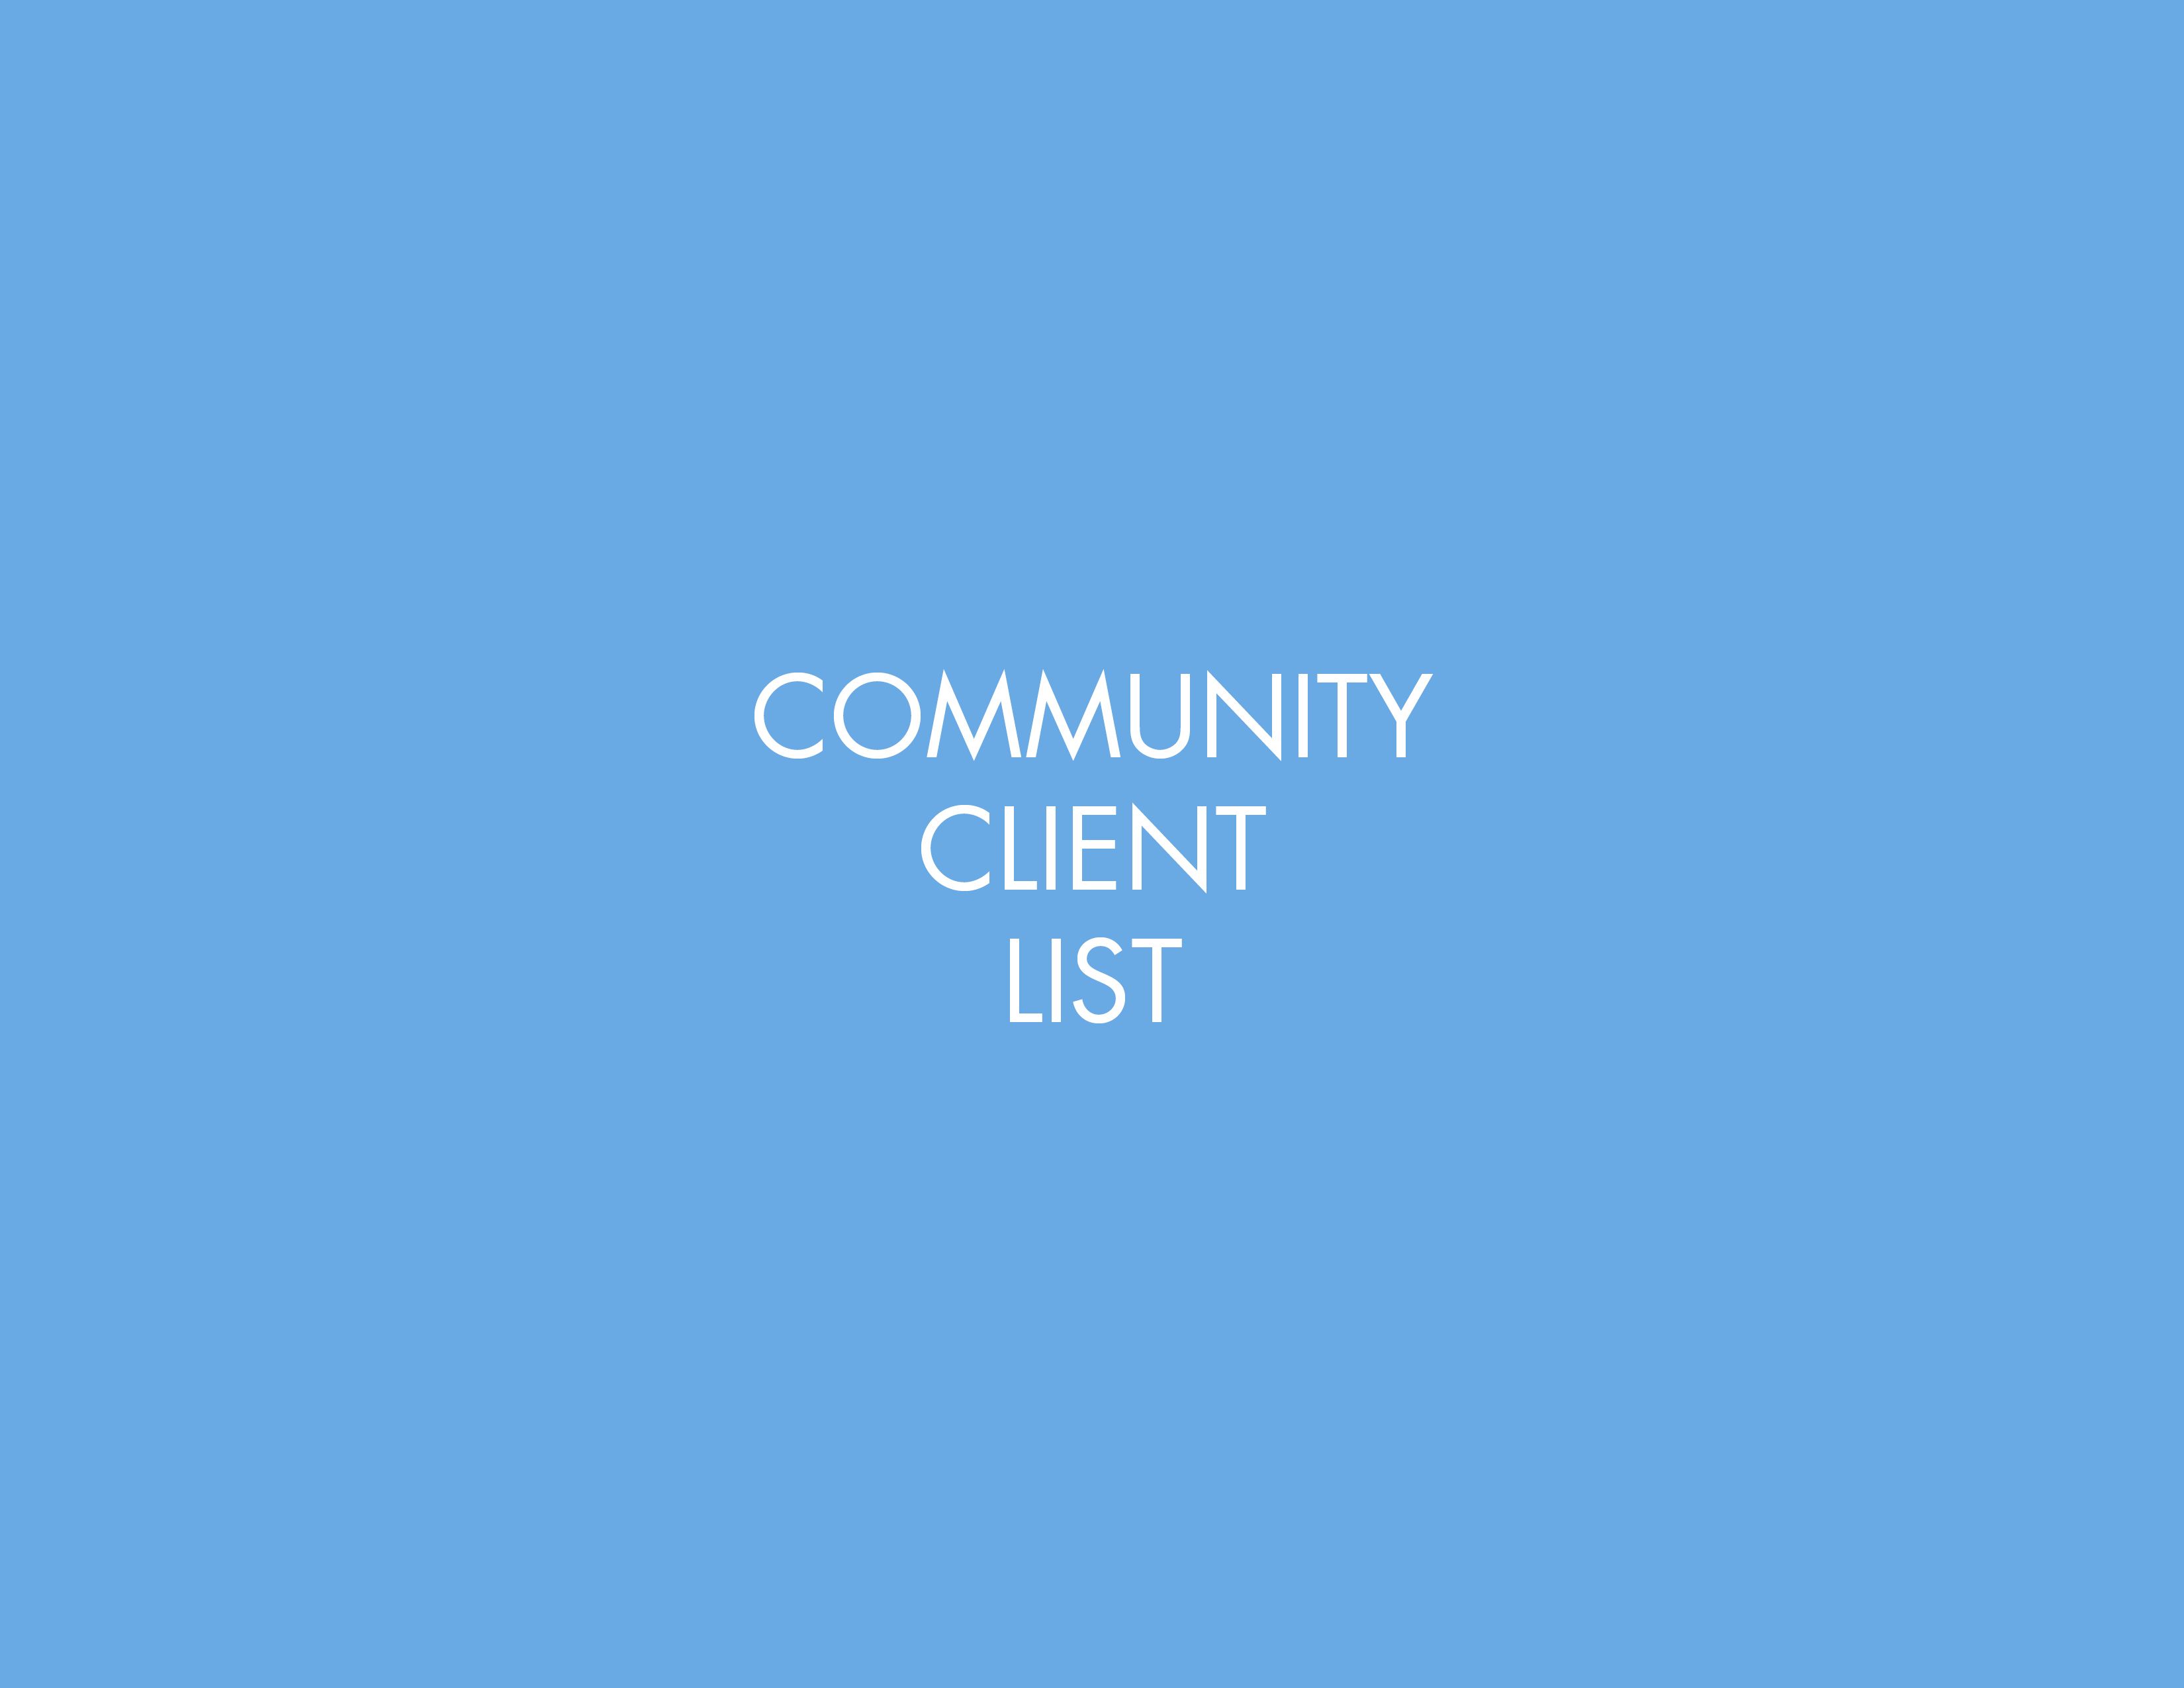 Community Client List Images2.jpg